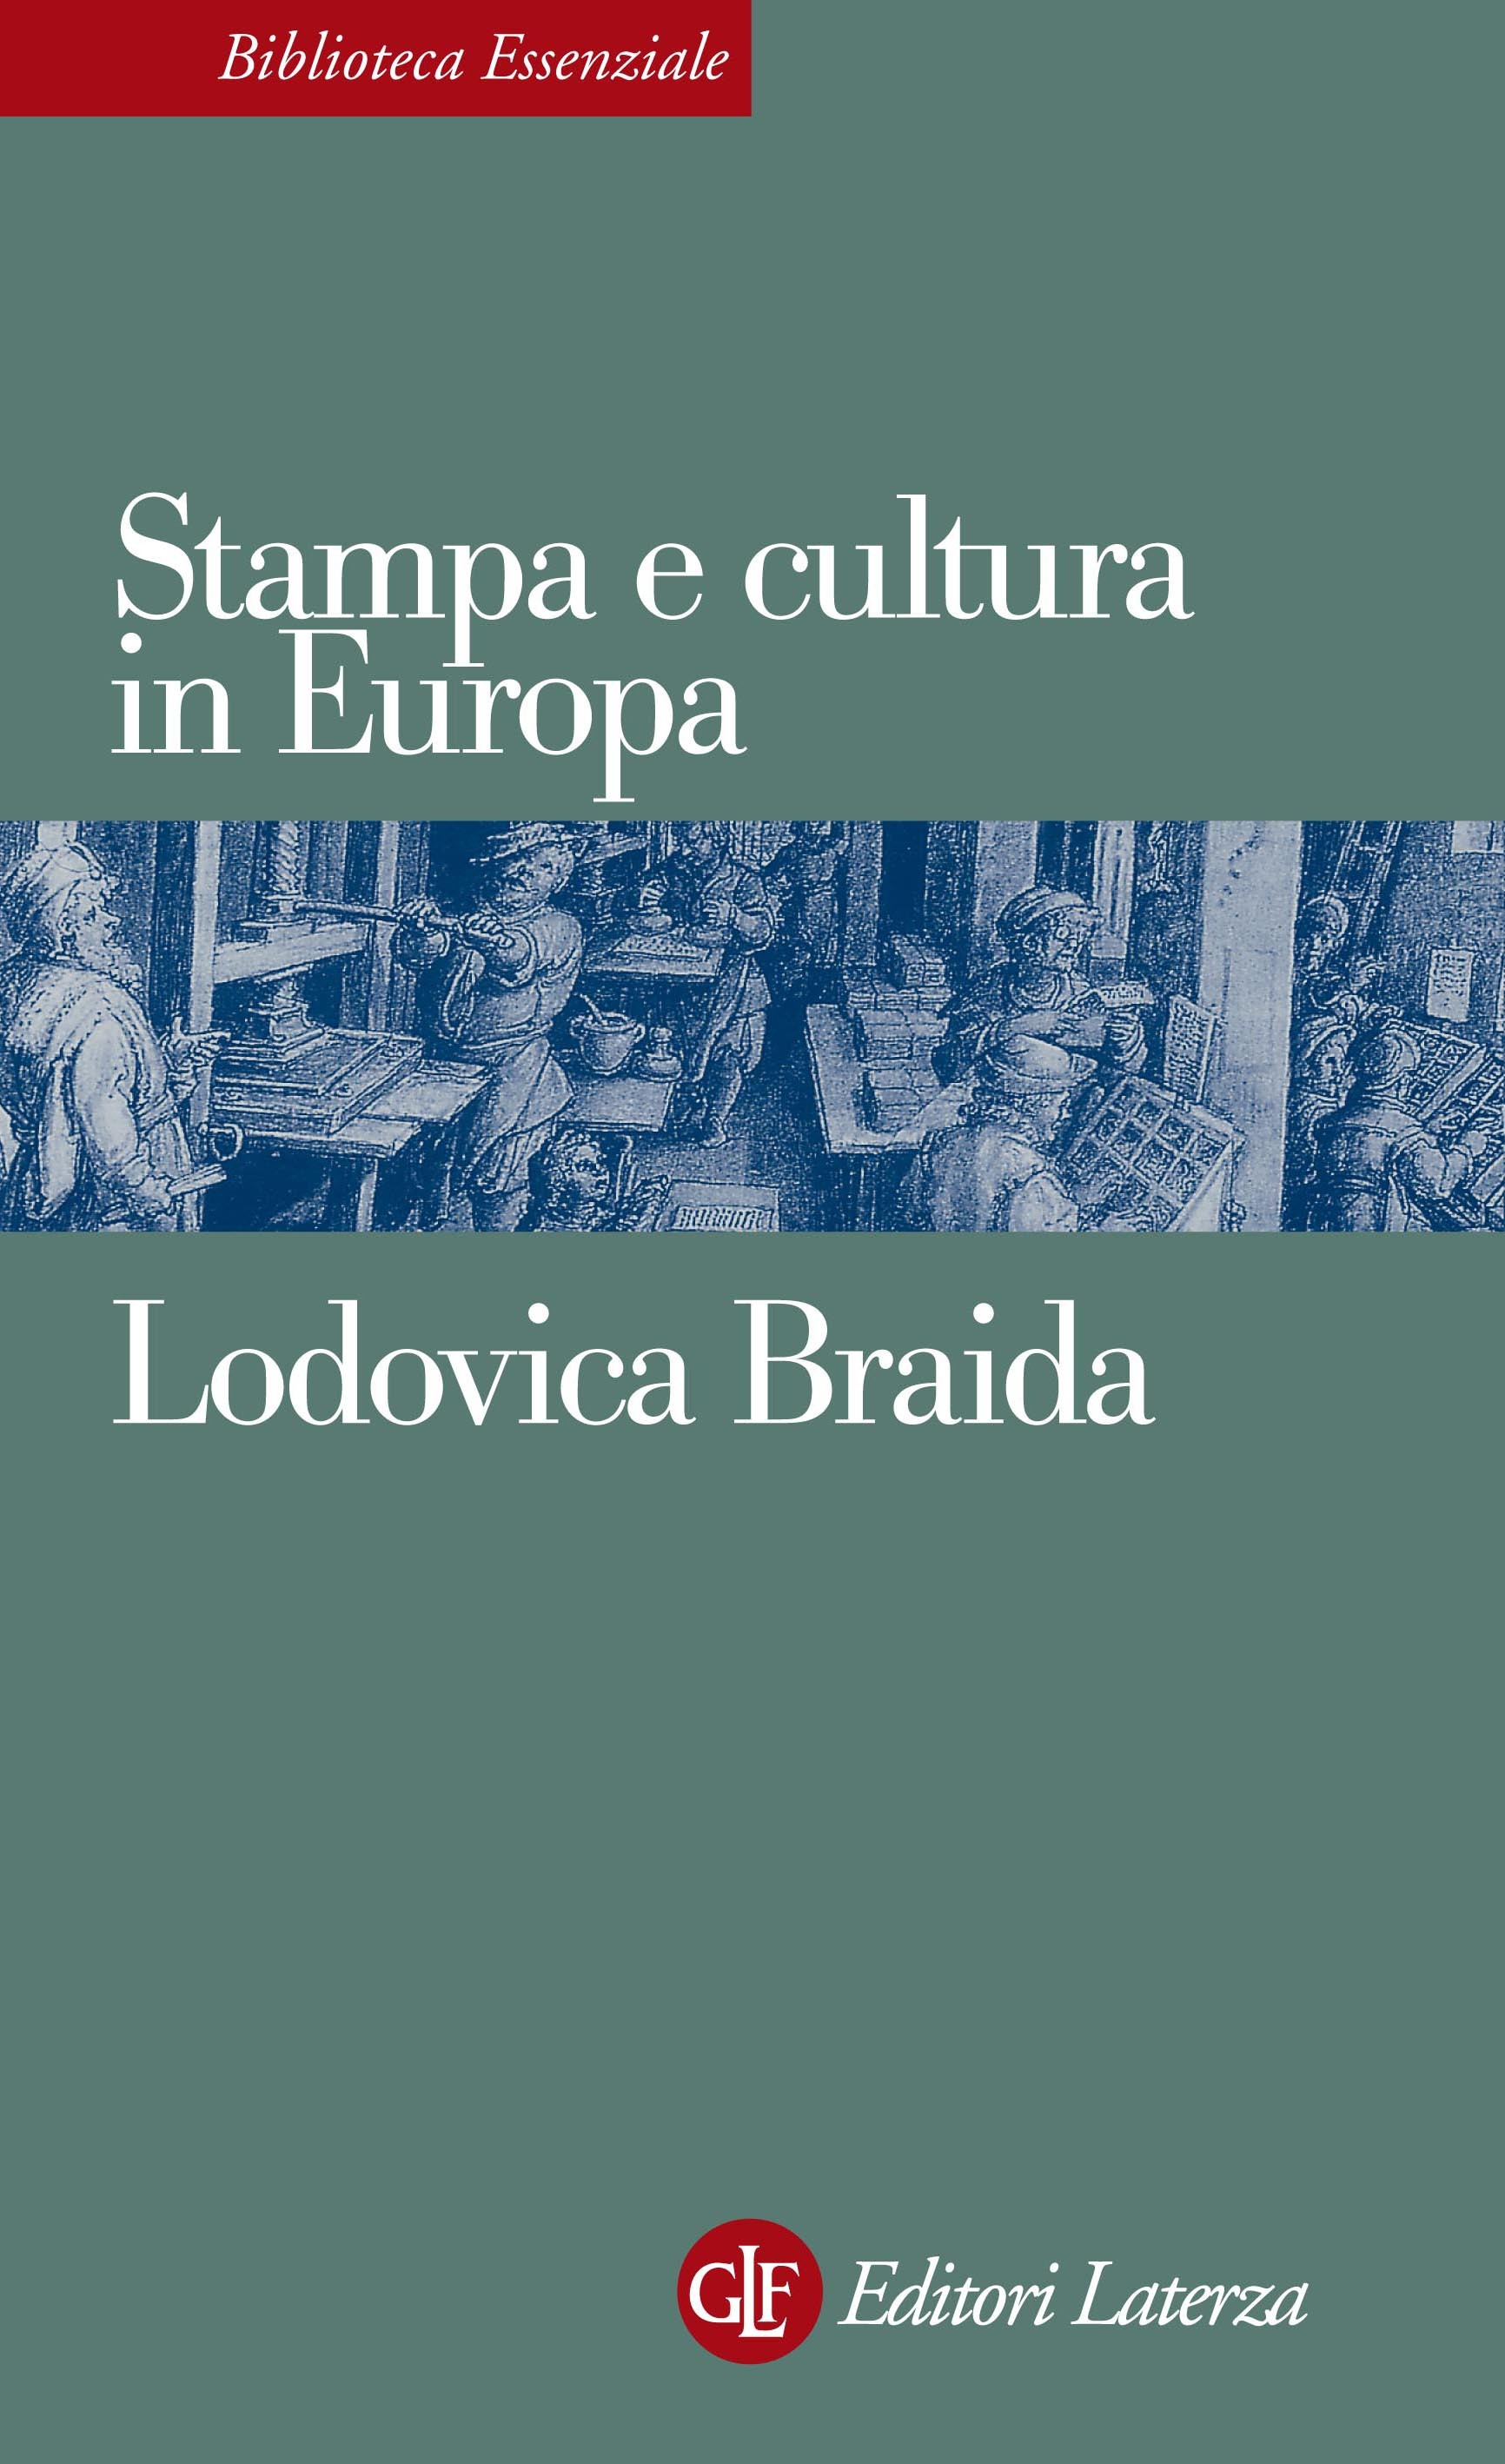 Stampa e cultura in Europa tra XV e XVI secolo - Librerie.coop